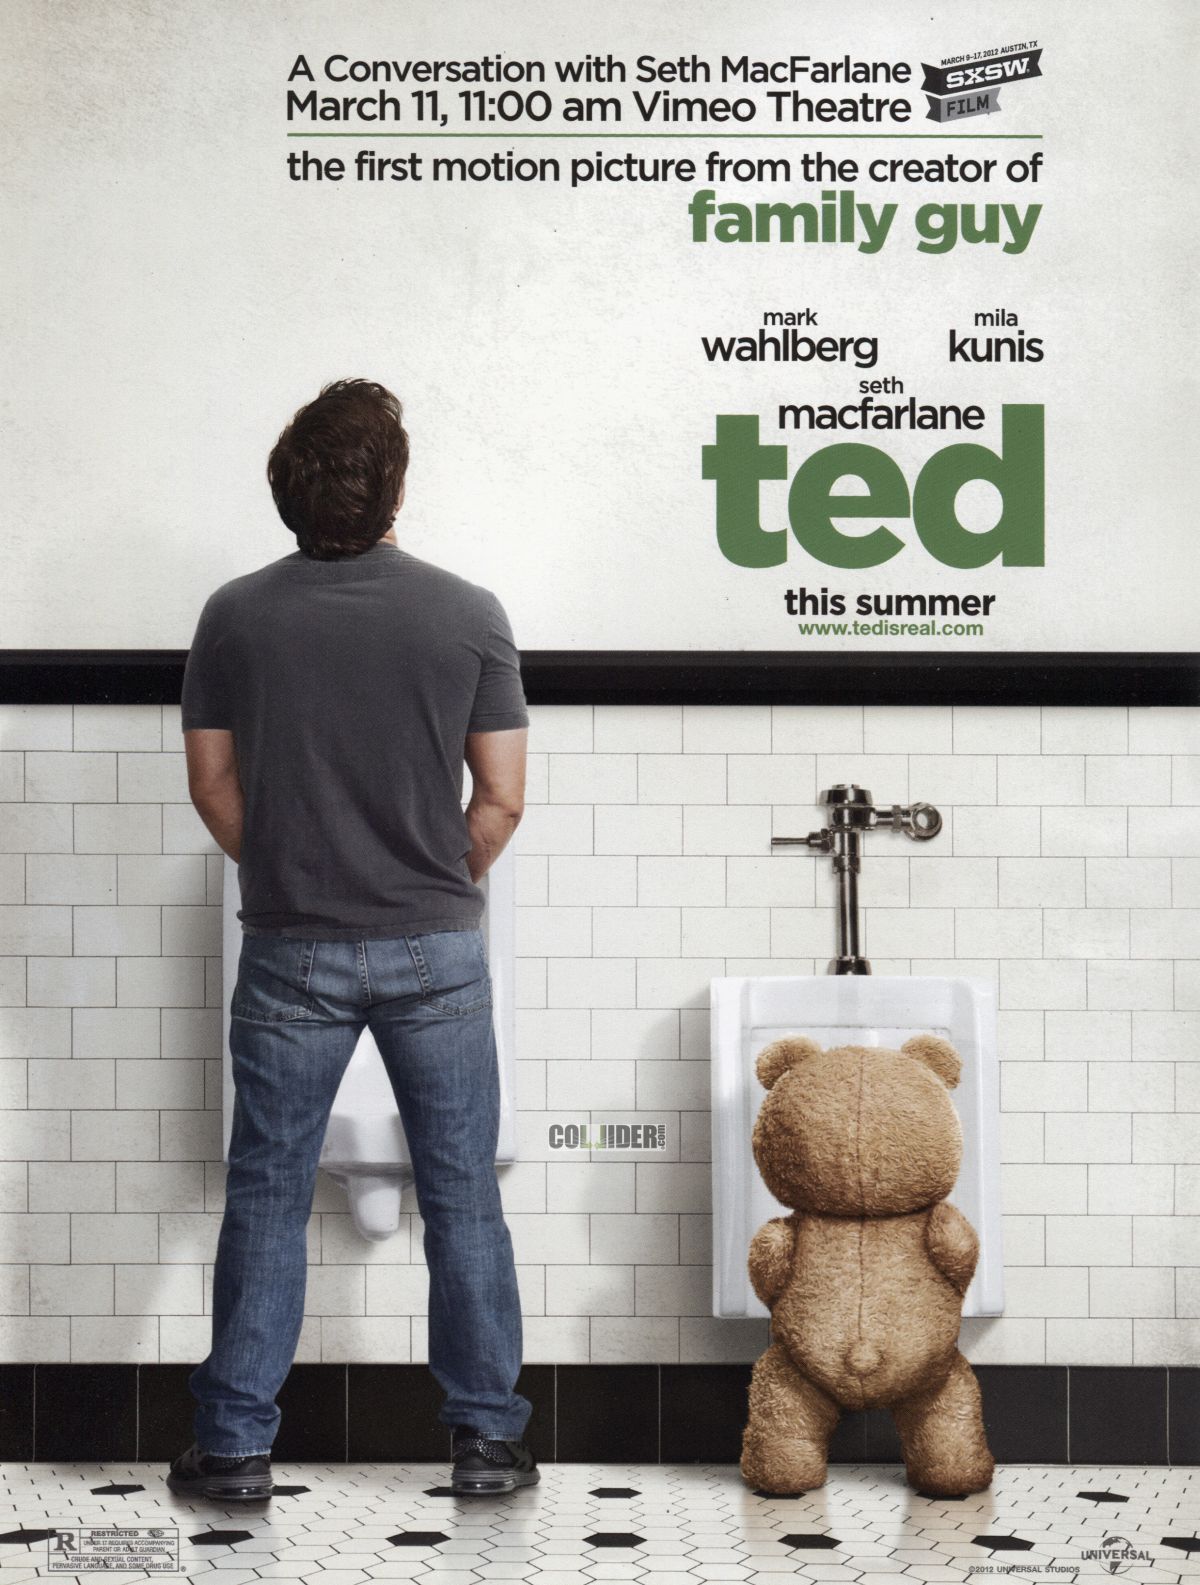 "Ted" cały czas w formie 